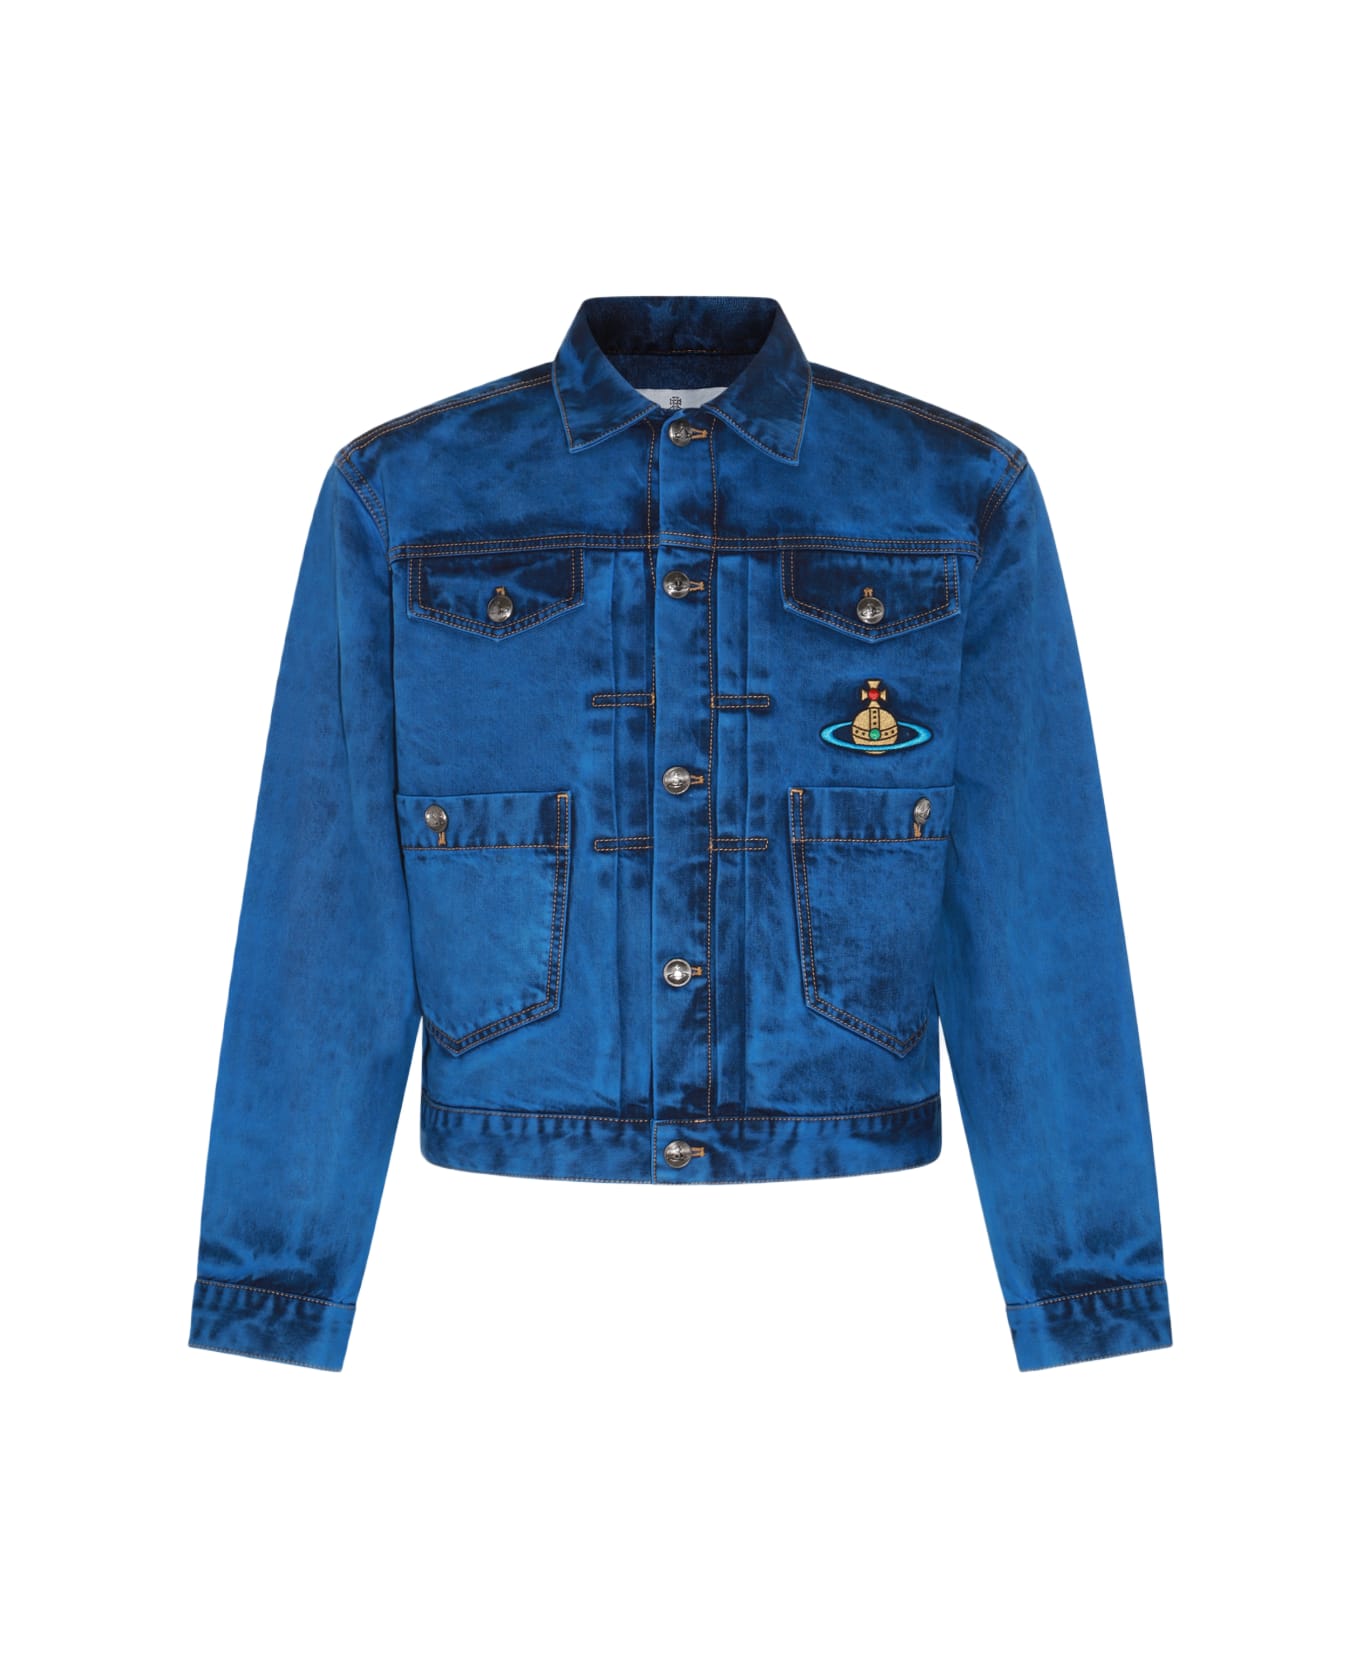 Vivienne Westwood Blue Cotton Denim Jacket - Blue